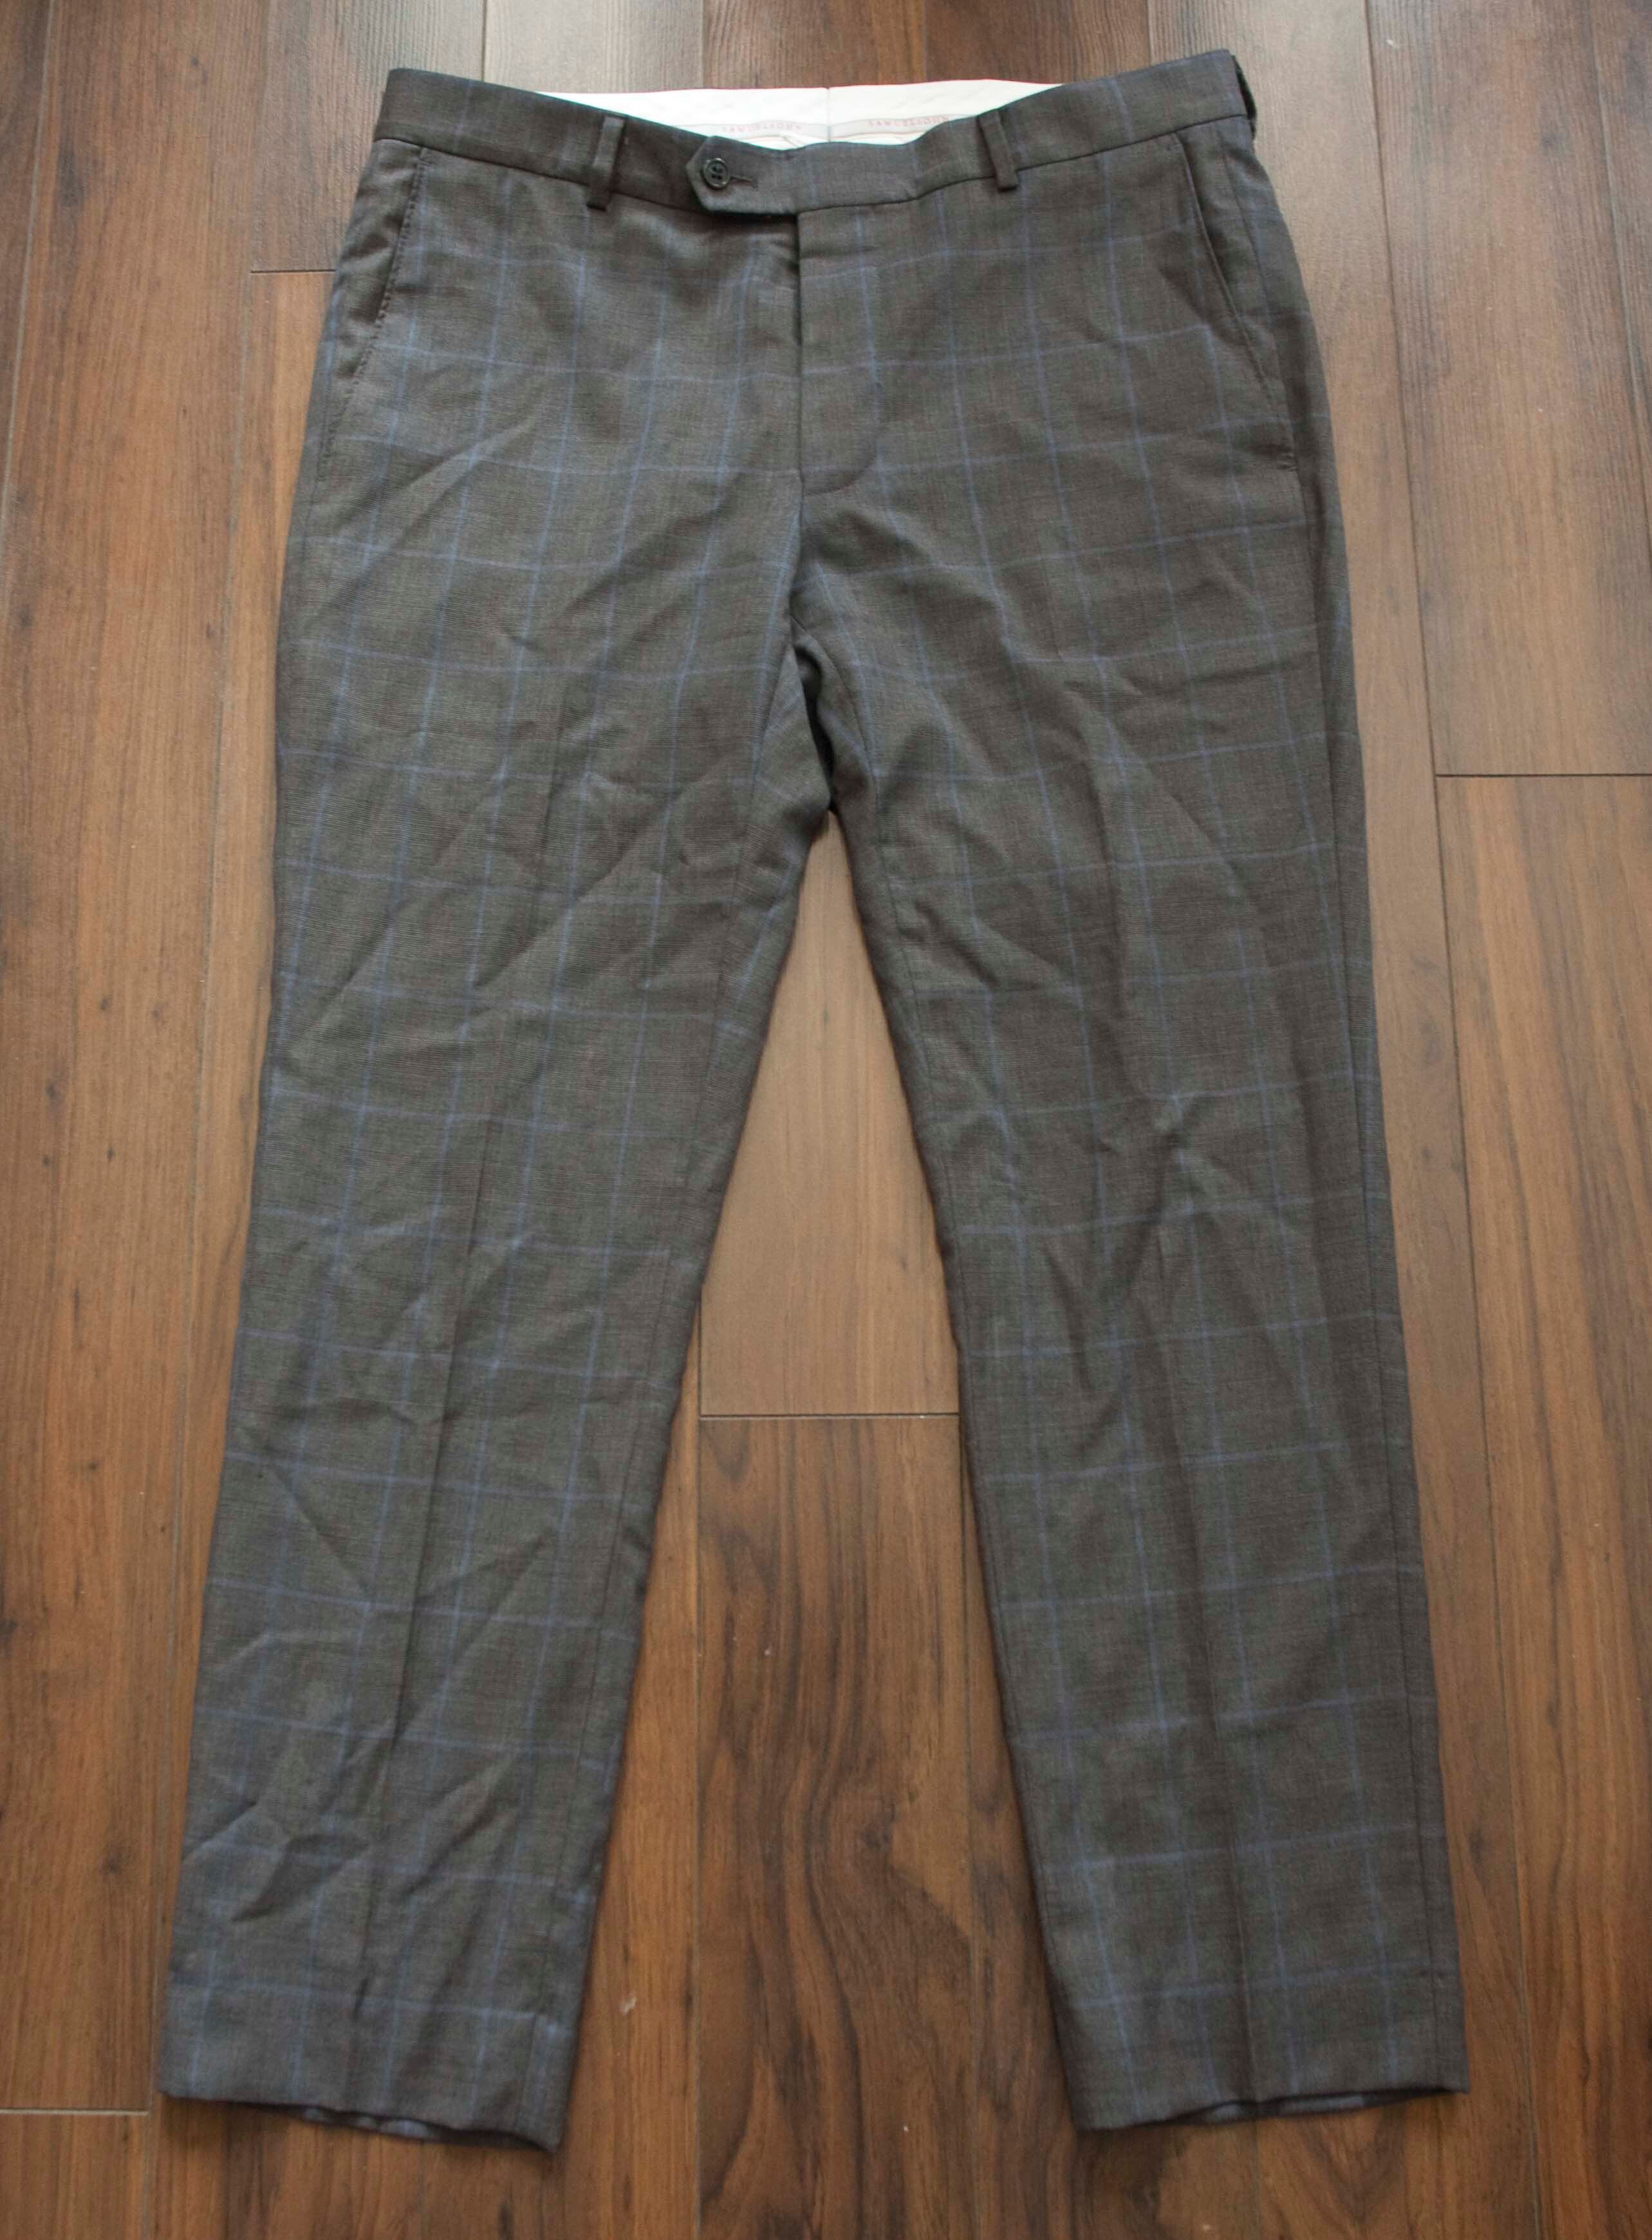 Samuelsohn Samuelsohn Pants Gray Size 34x27.5 | Grailed